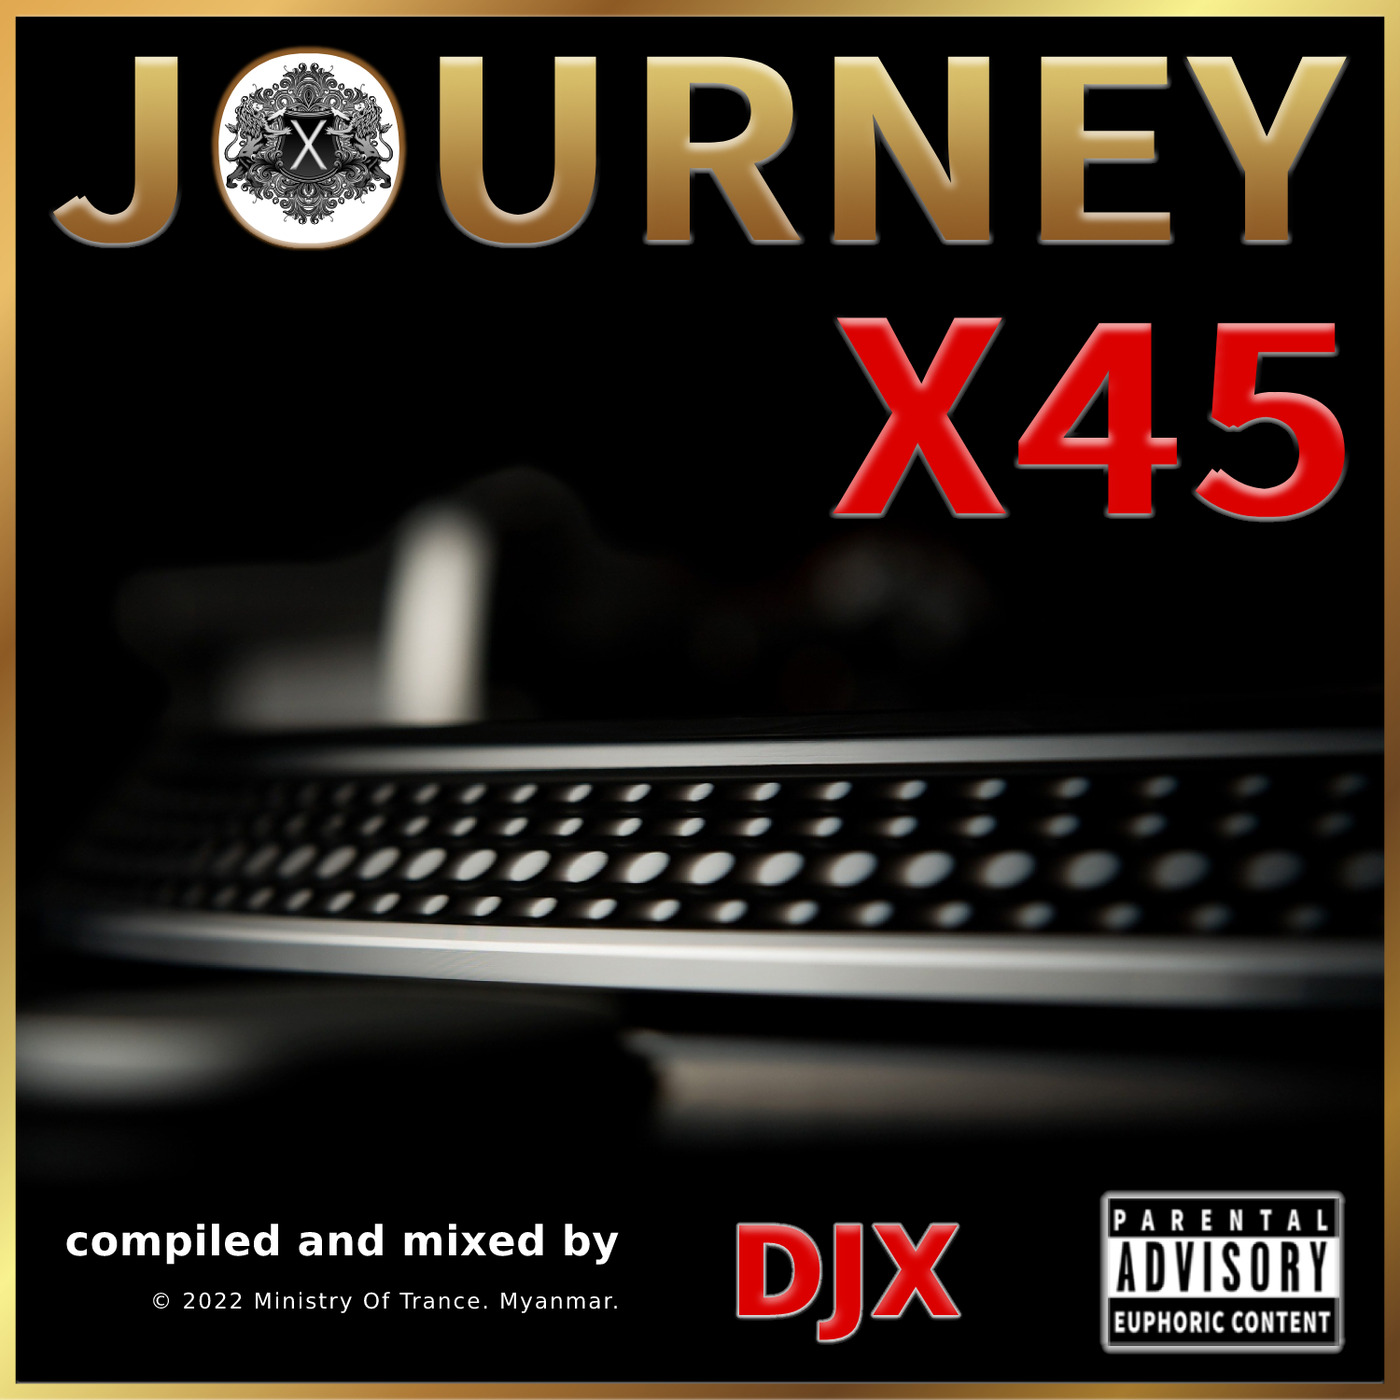 Journey X45